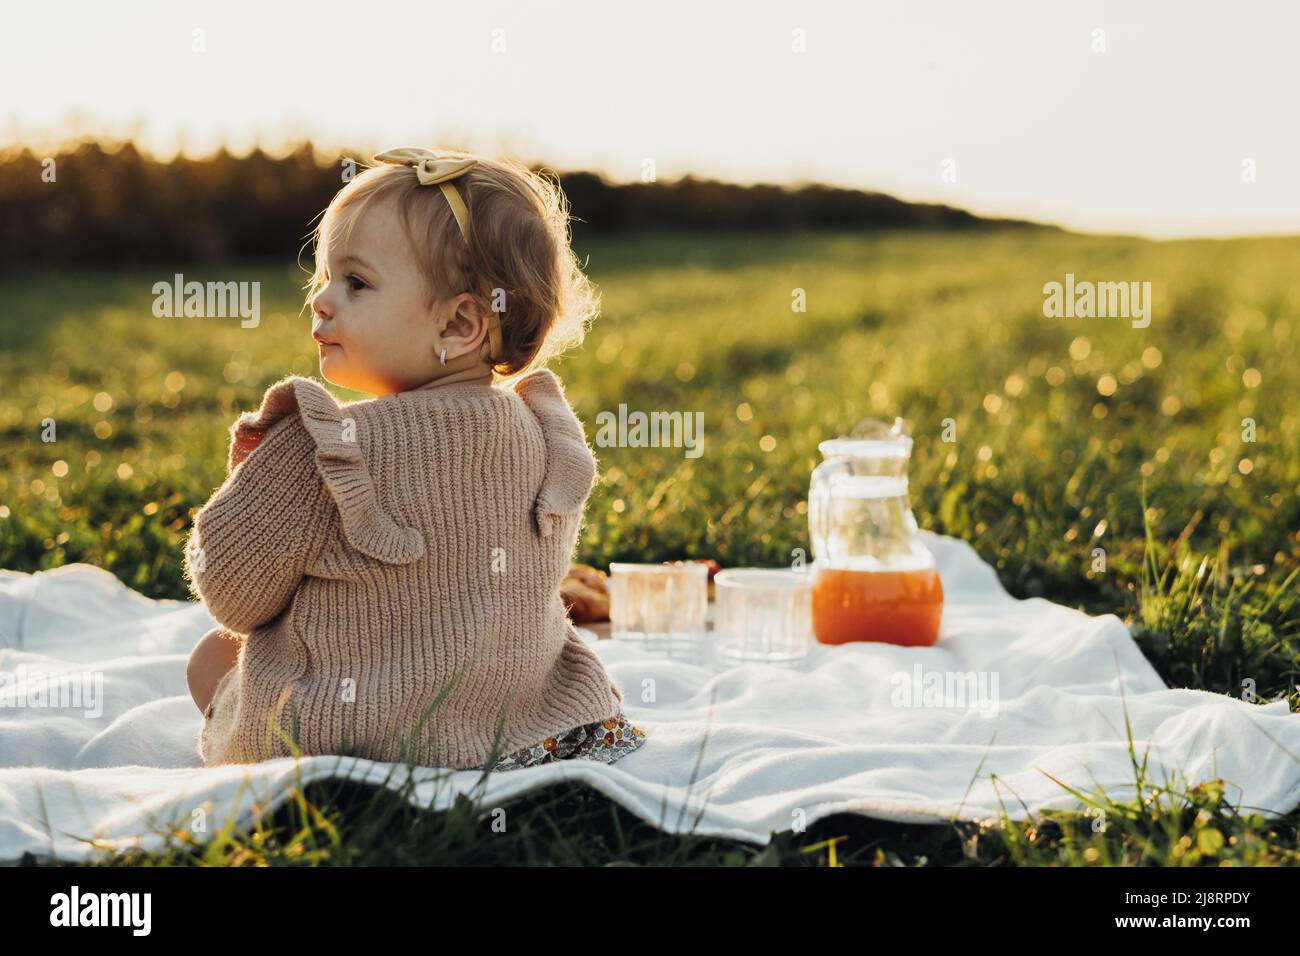 Rückansicht des kleinen Mädchens, das auf einem Plaid im Freien bei Sonnenuntergang sitzt Stockfoto